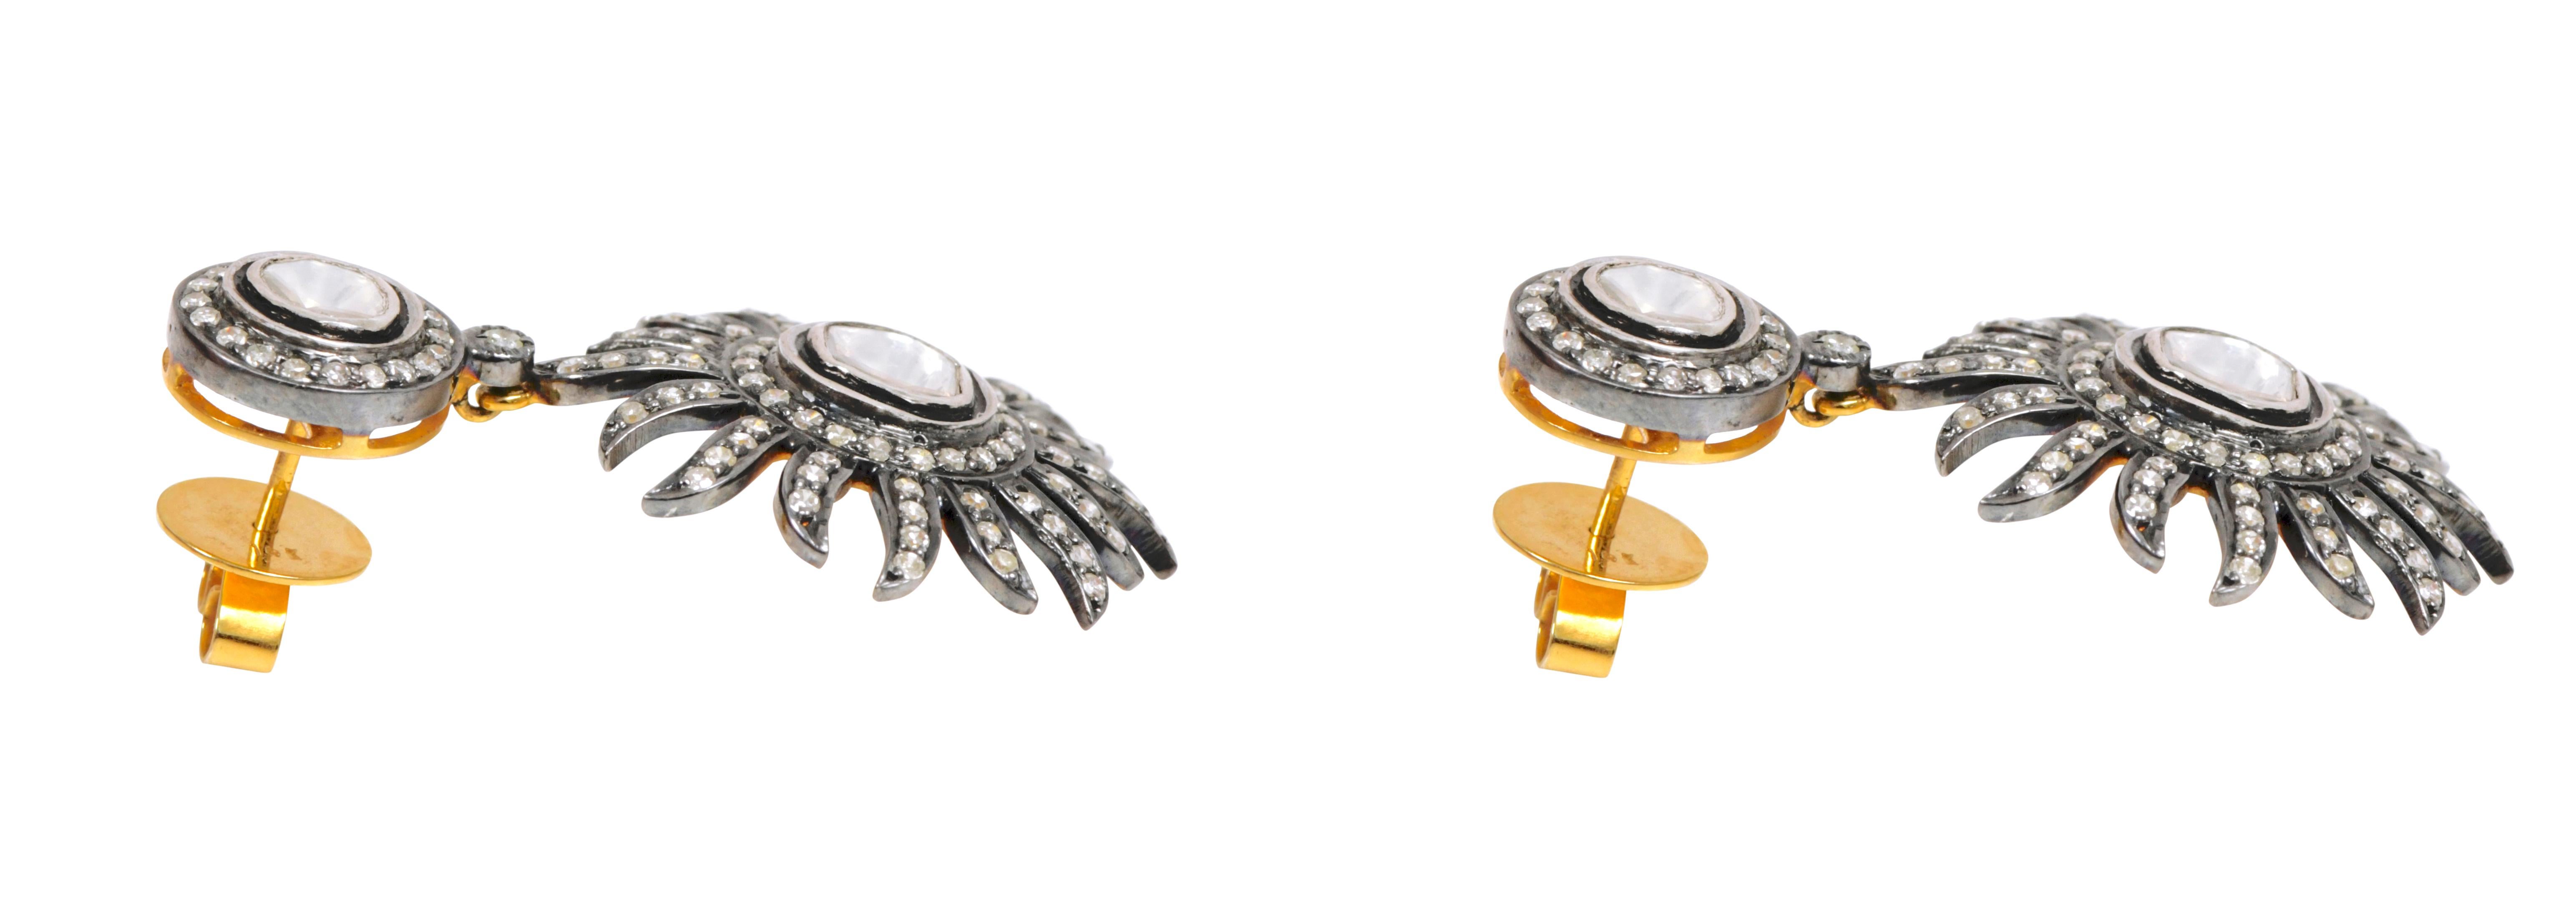 Uncut 2.28 Carat Diamond Sunburst Dangle Earrings in Art-Deco Style For Sale